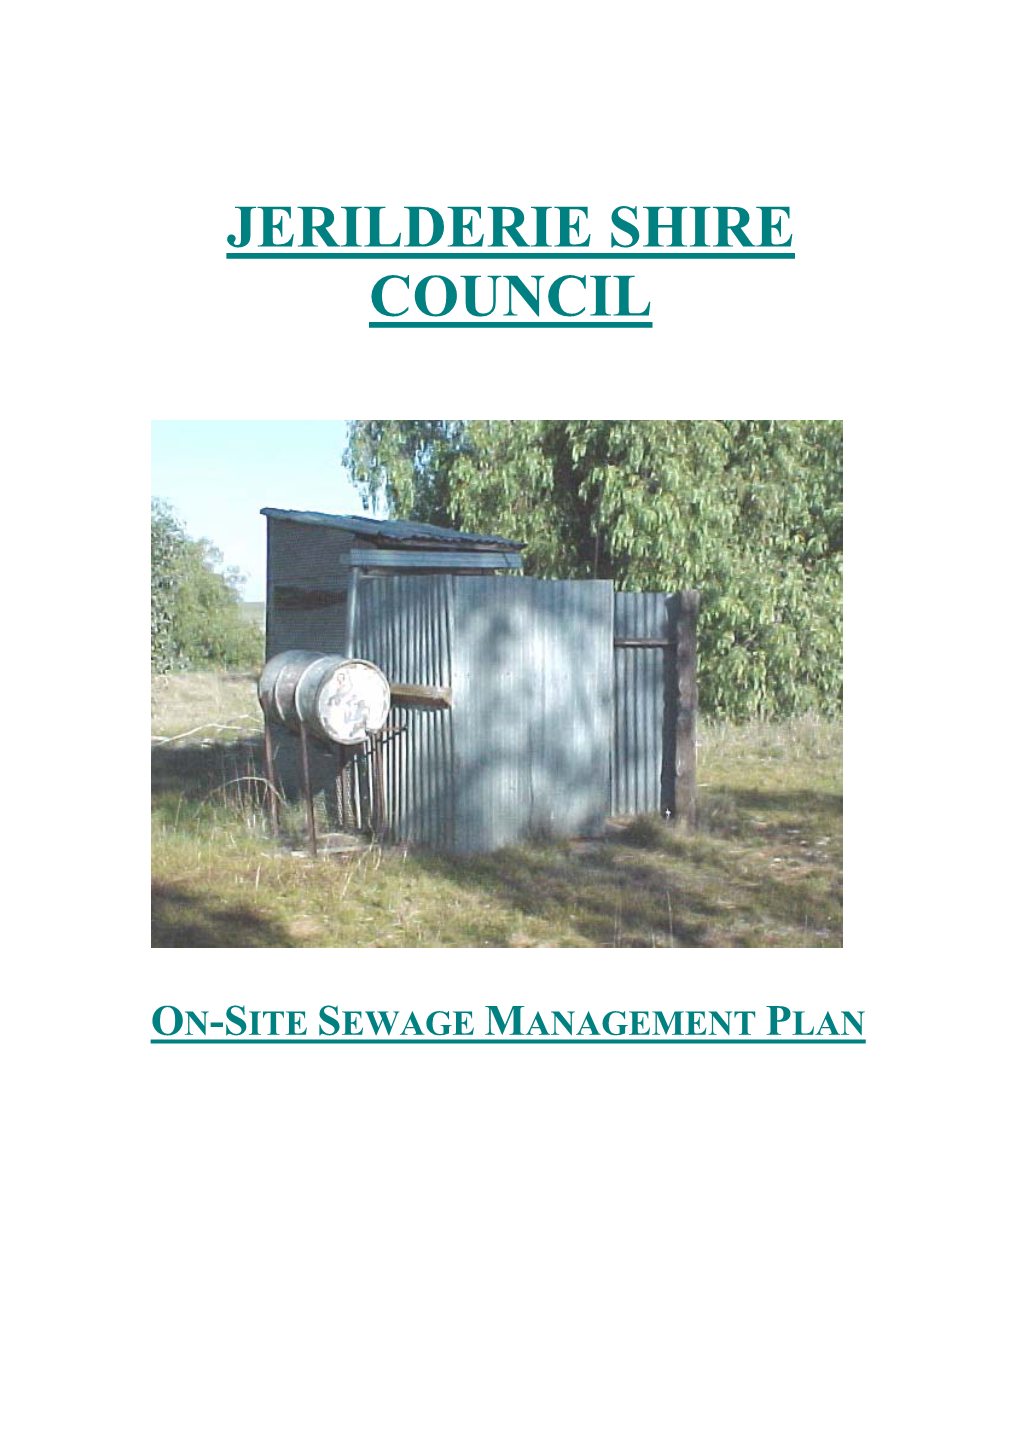 Jerilderie Shire Council